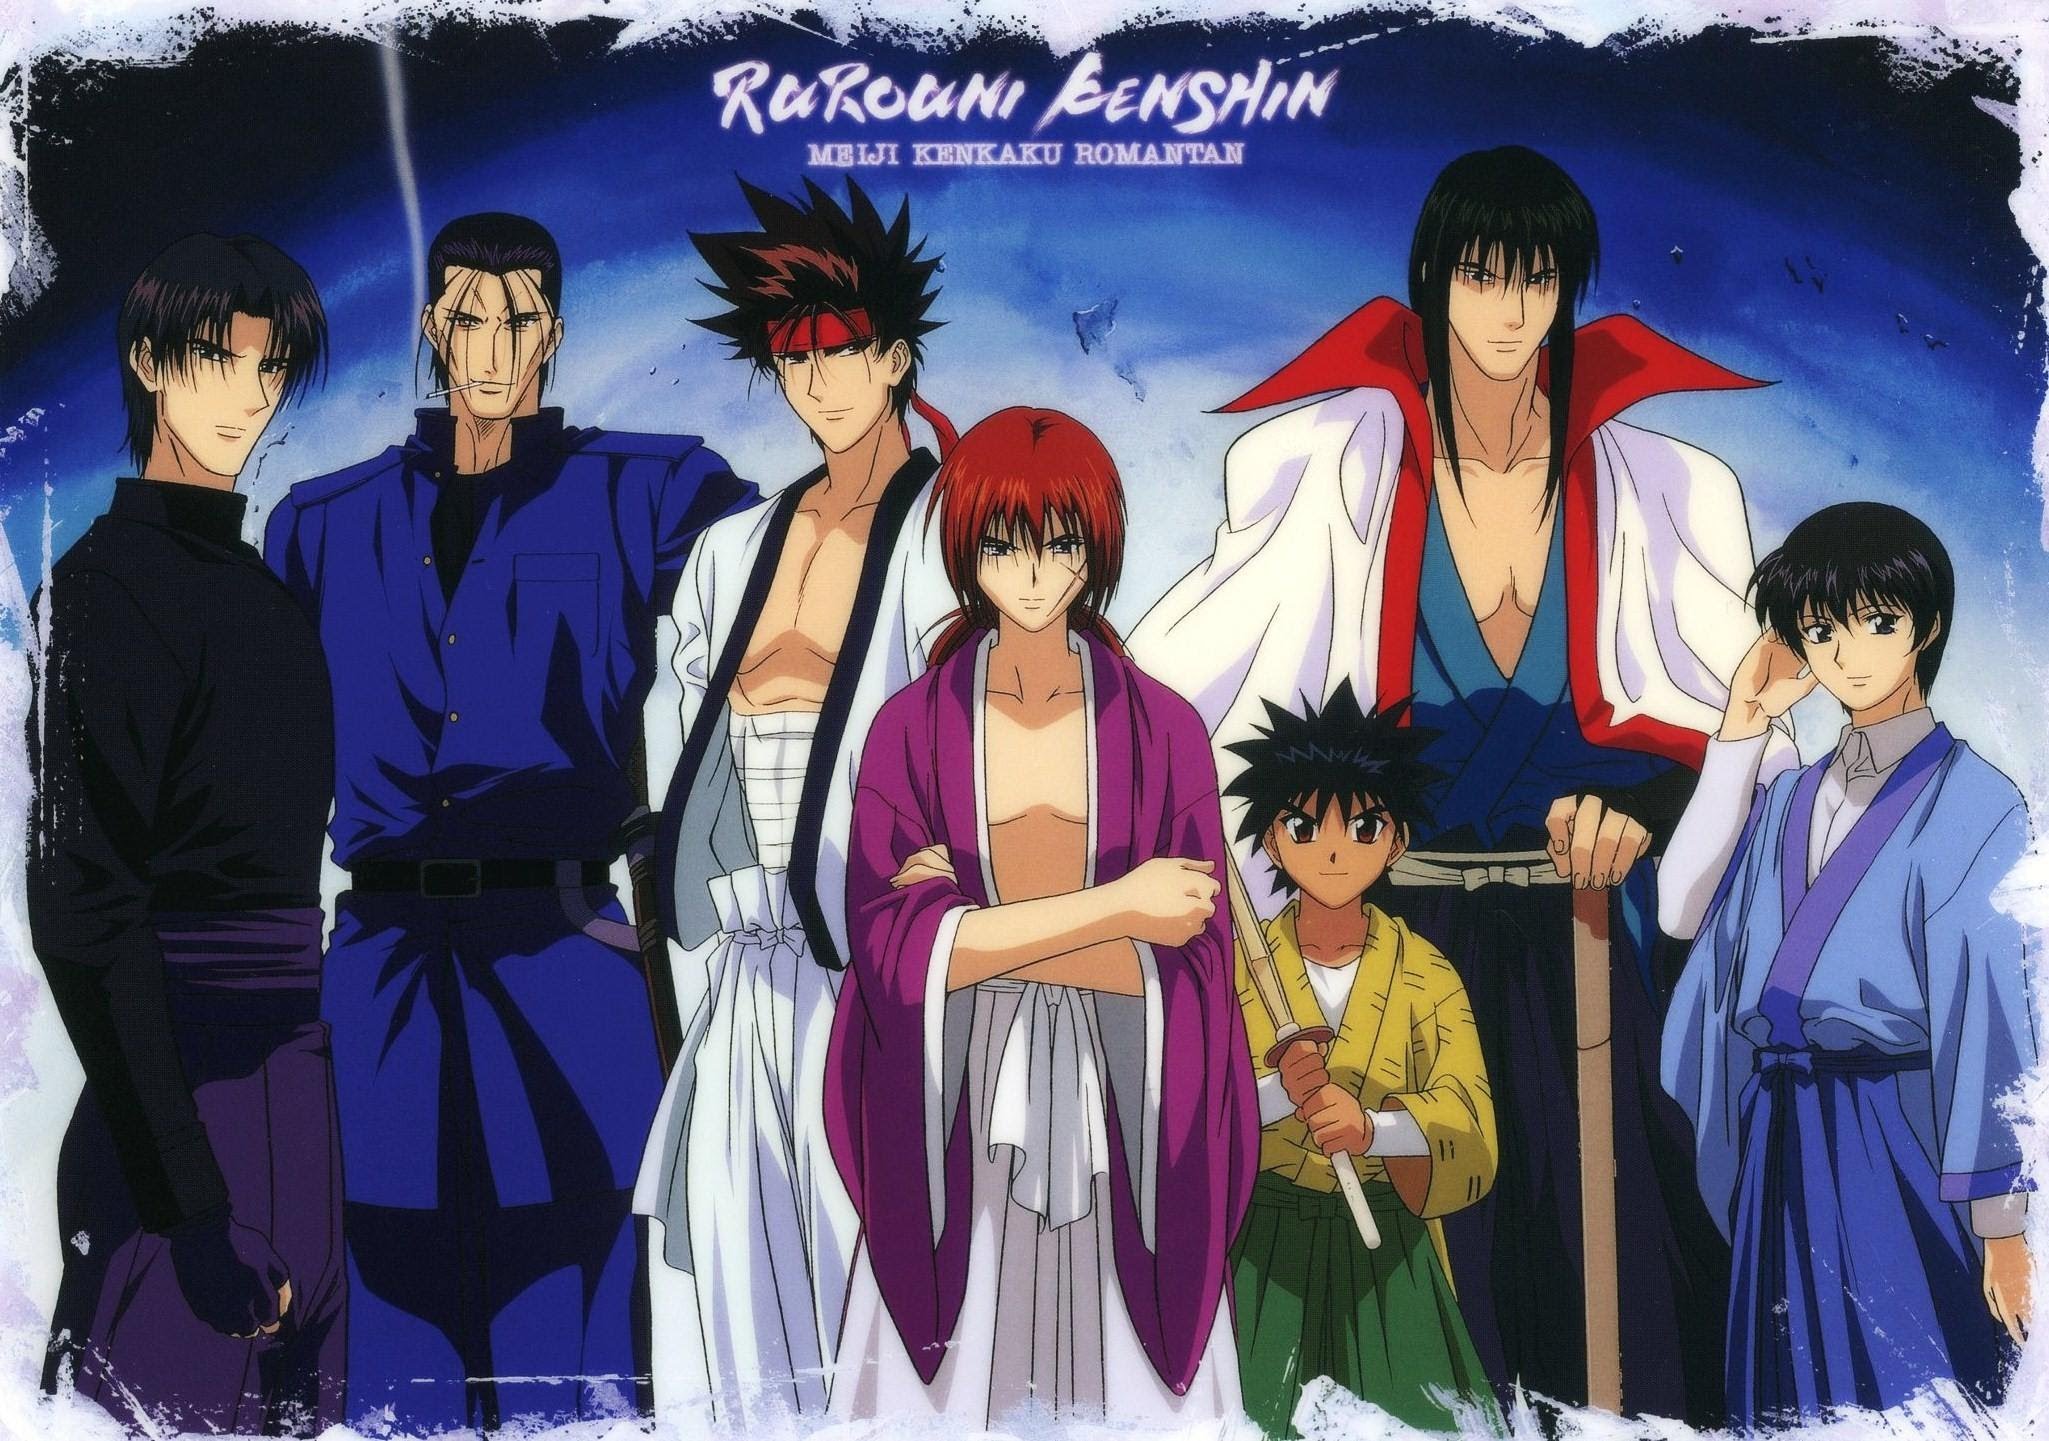 Rurouni Kenshin - Rurouni Kenshin: Meiji Kenkaku Romantan